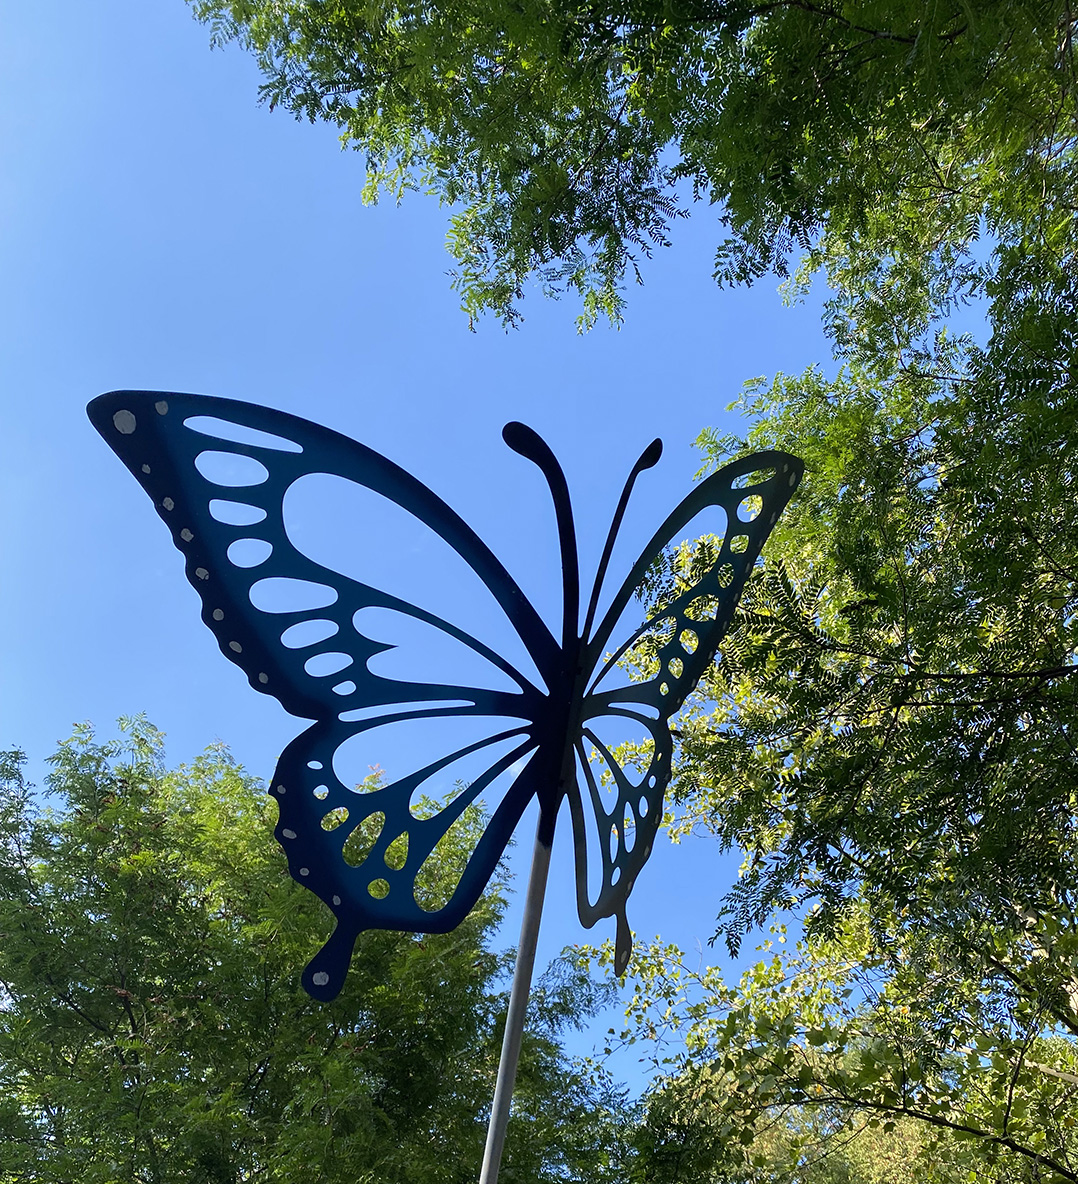 Grant to fund butterfly sculpture, pollinator garden